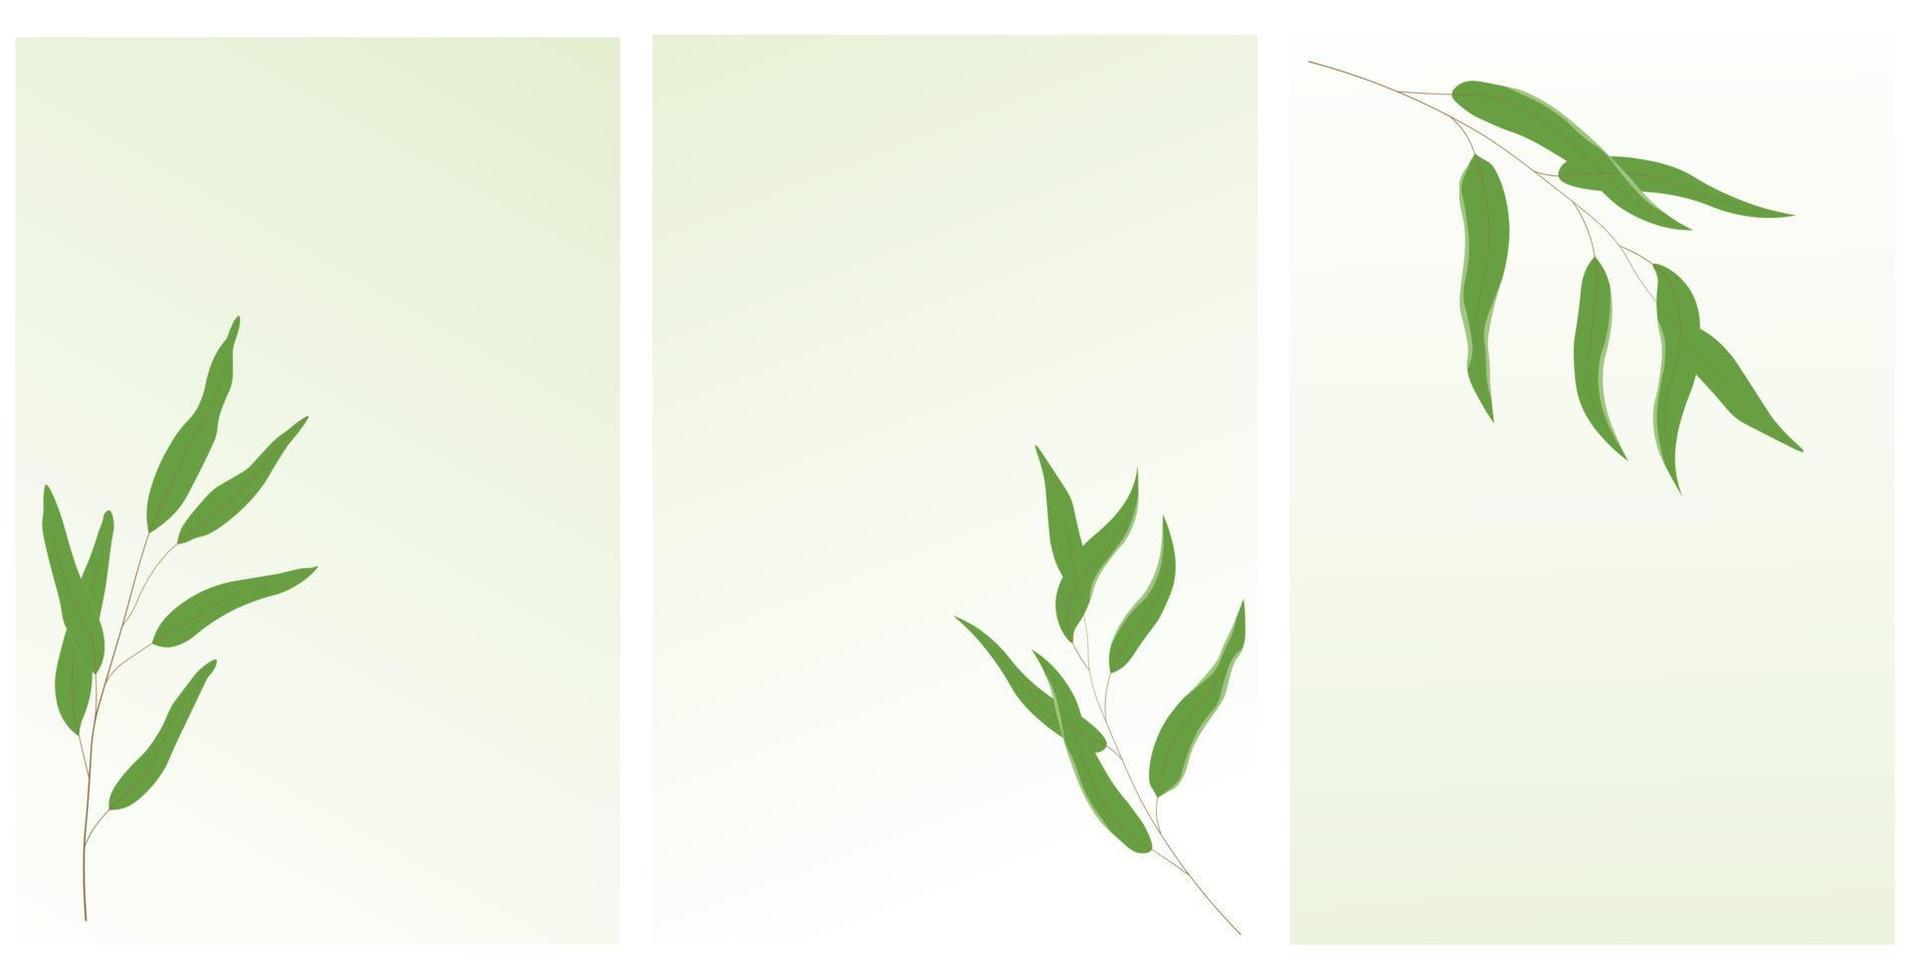 vide gren. botanisk posters i minimalism. utsökt grön löv. vektor stock illustration. isolerat på en vit bakgrund.